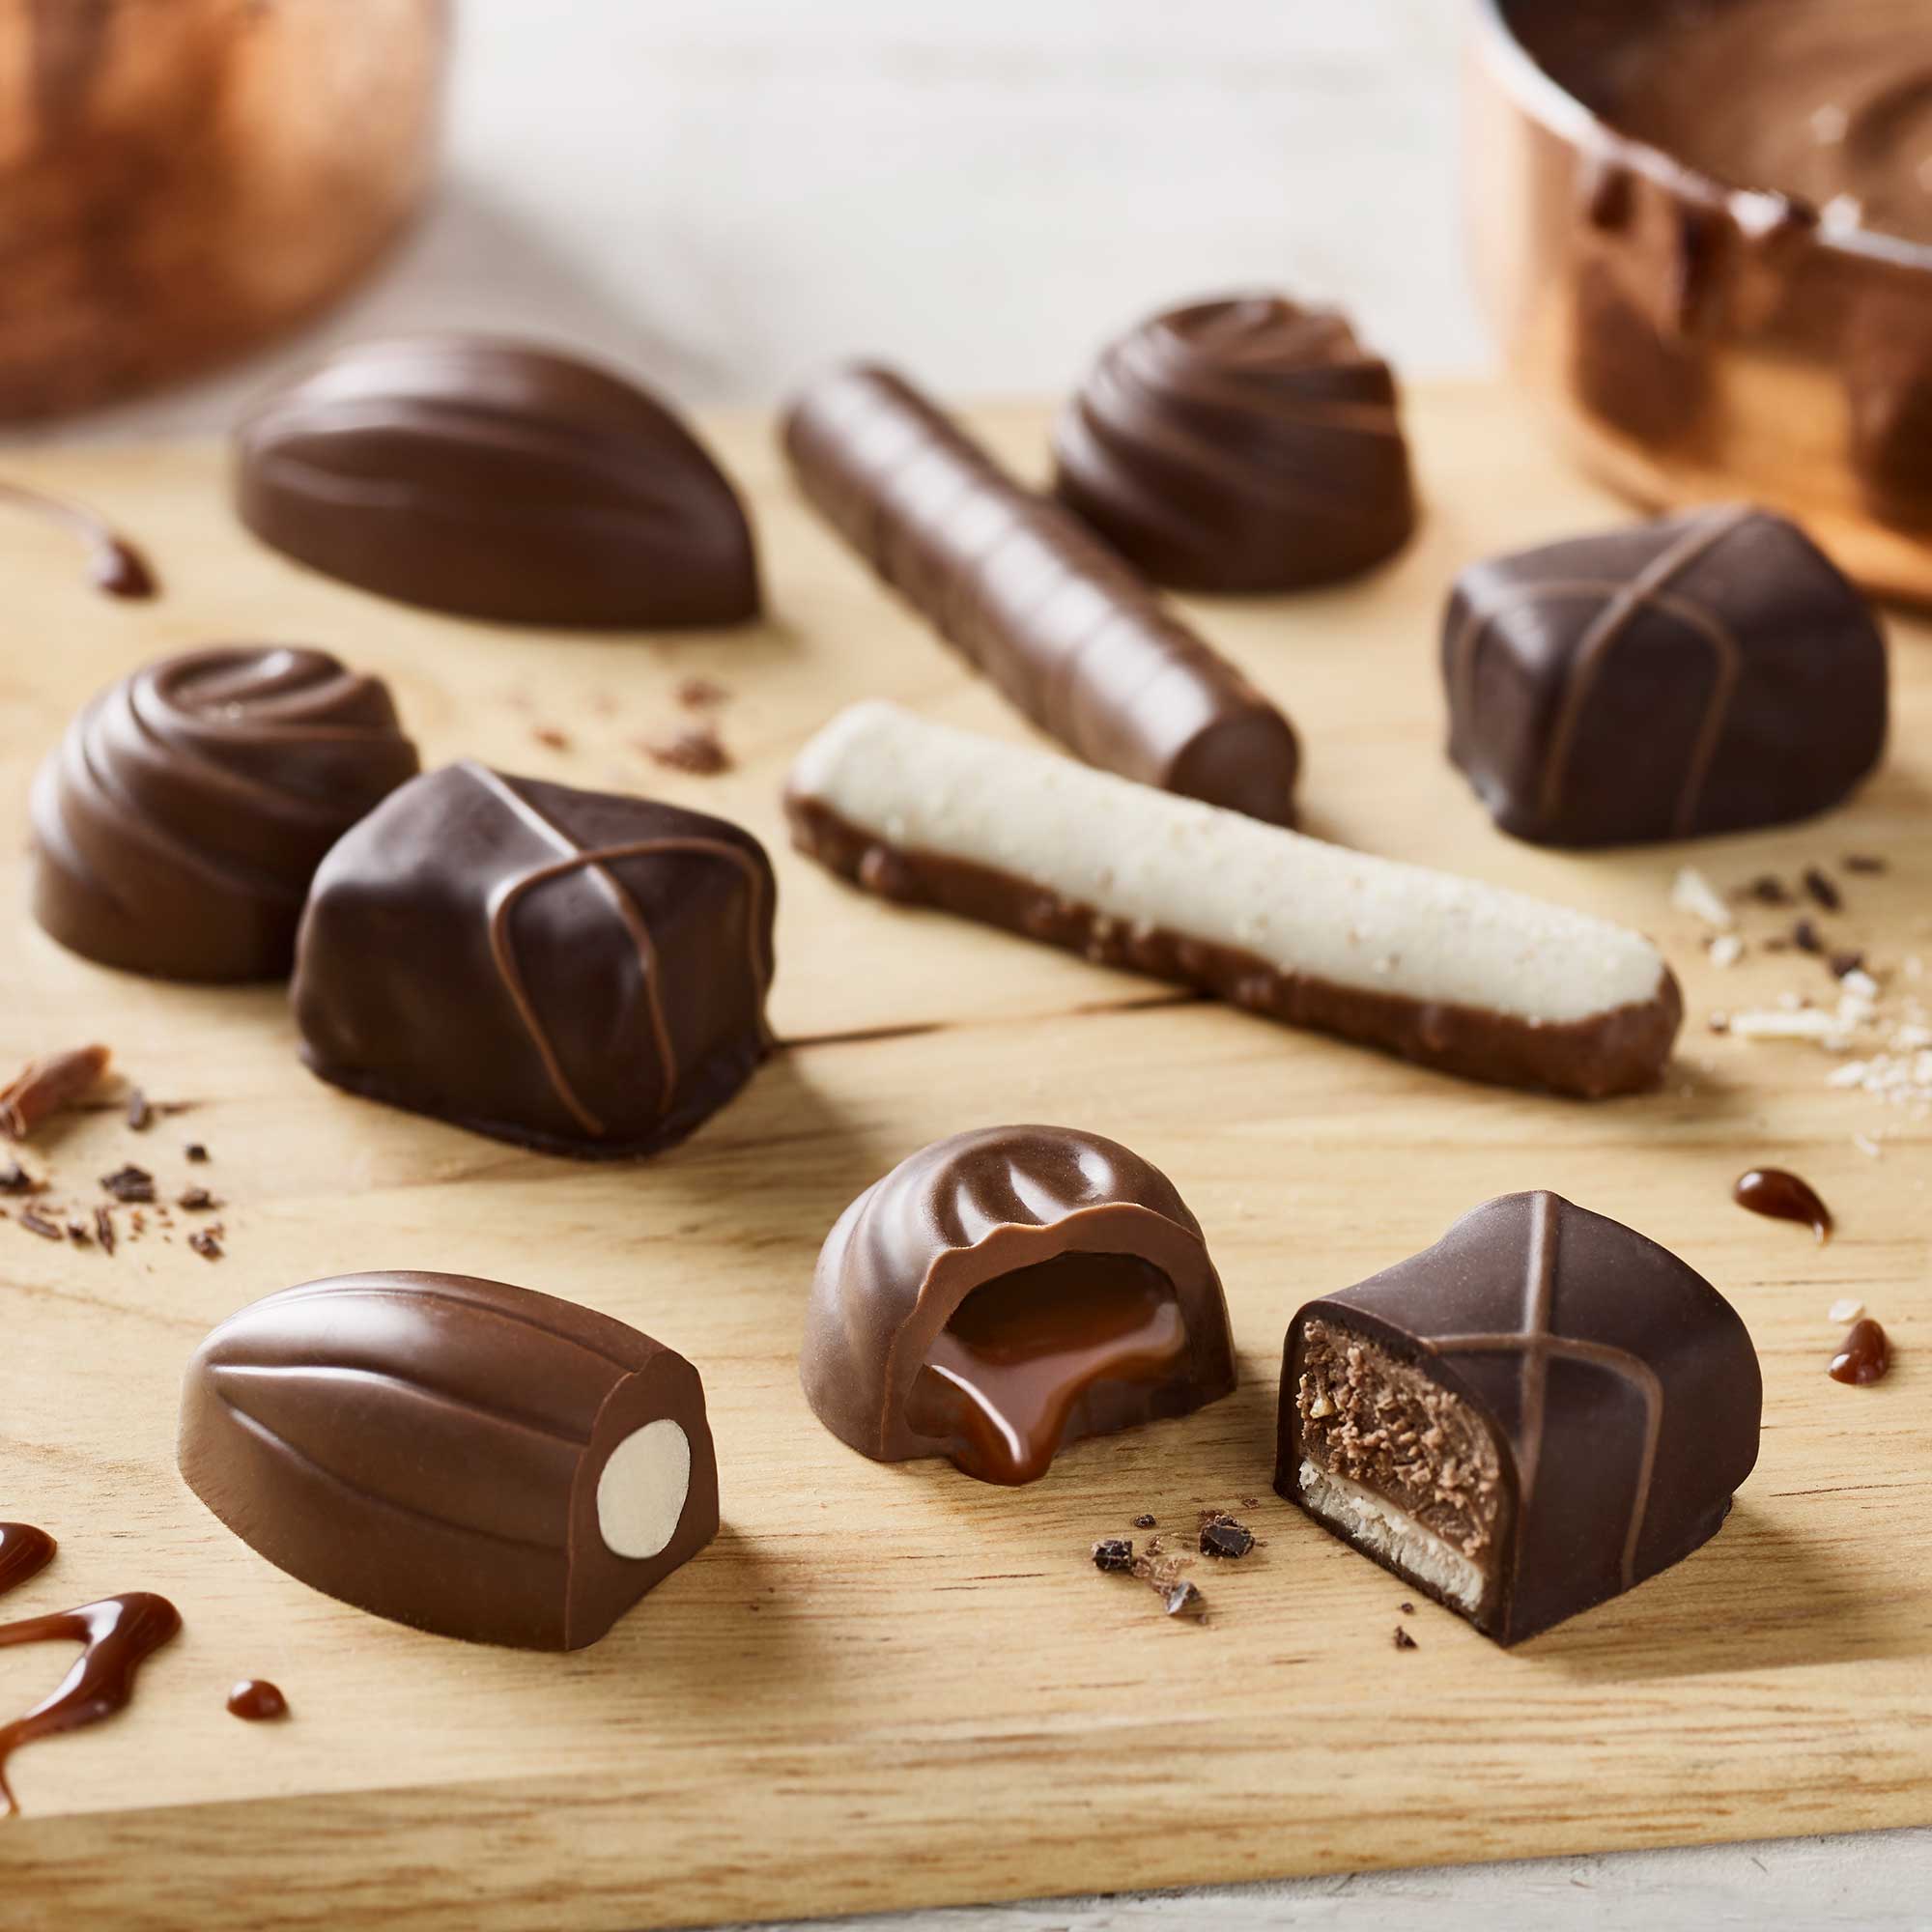 Credeați că știți totul despre ciocolată? Nici vorbă! Pariem că nu știați toate aceste curiozități